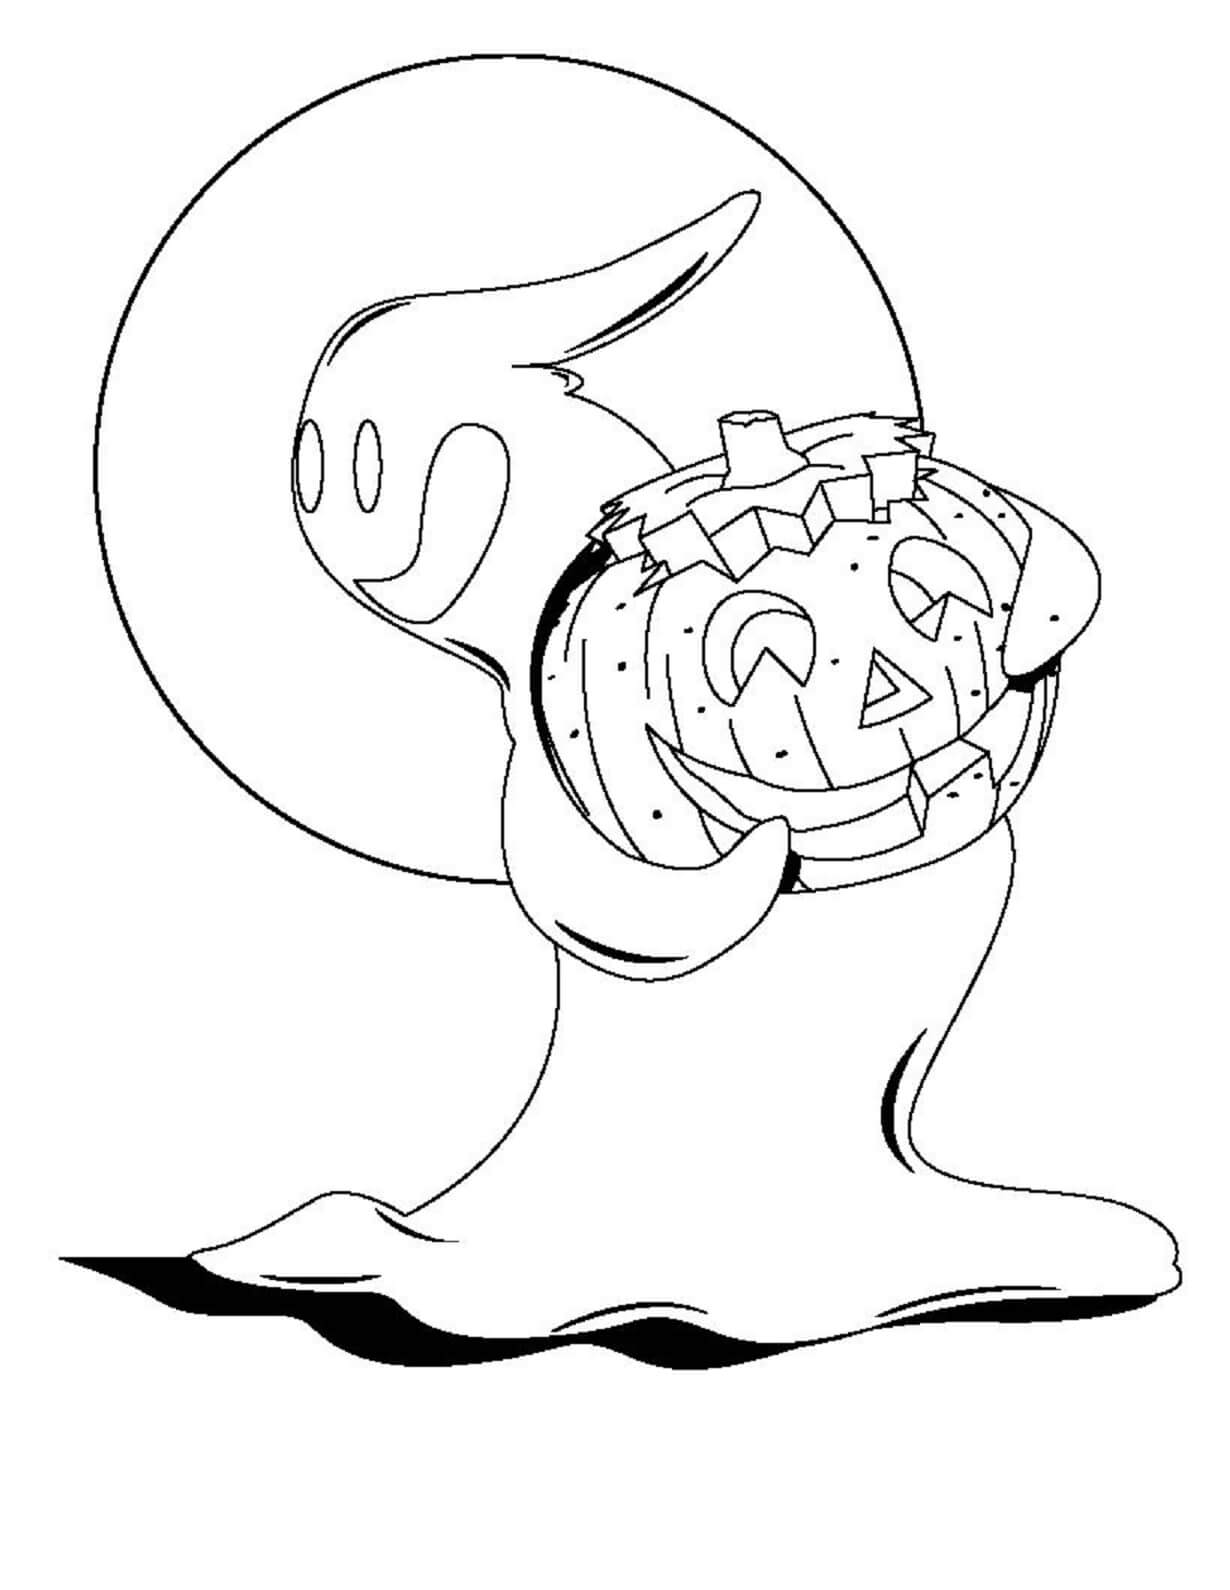 호박을 들고 있는 재미있는 유령 coloring page